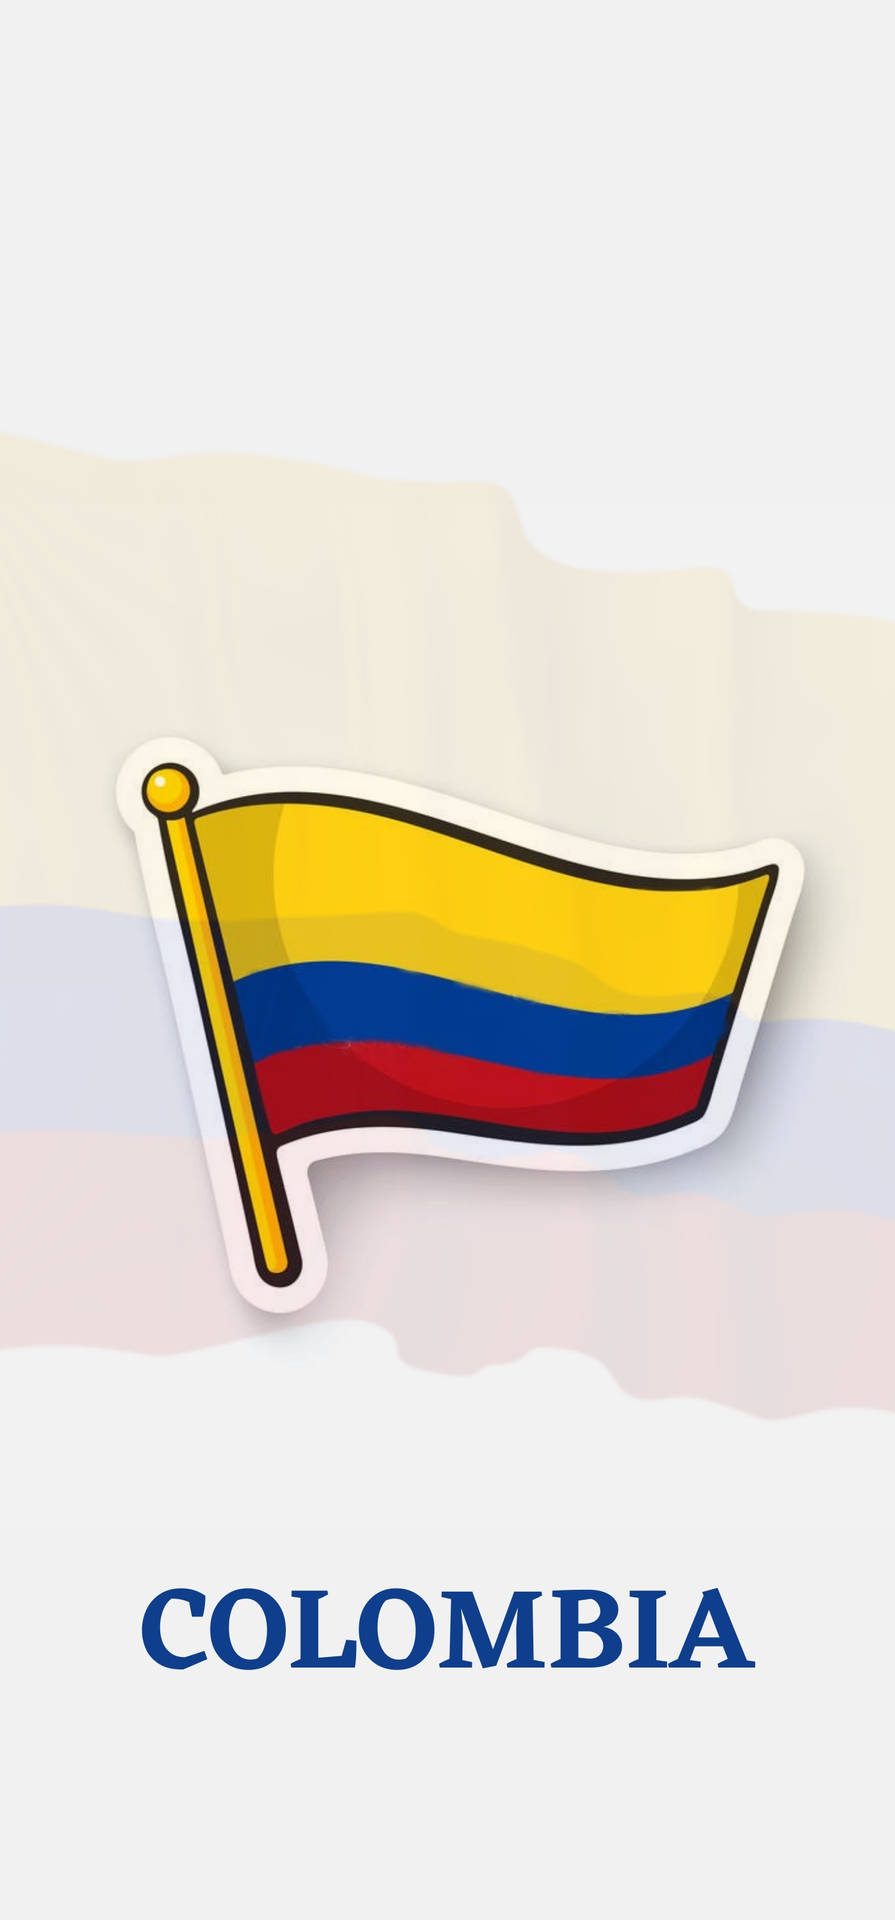 Banderade Colombia En Formato Vectorial Fondo de pantalla